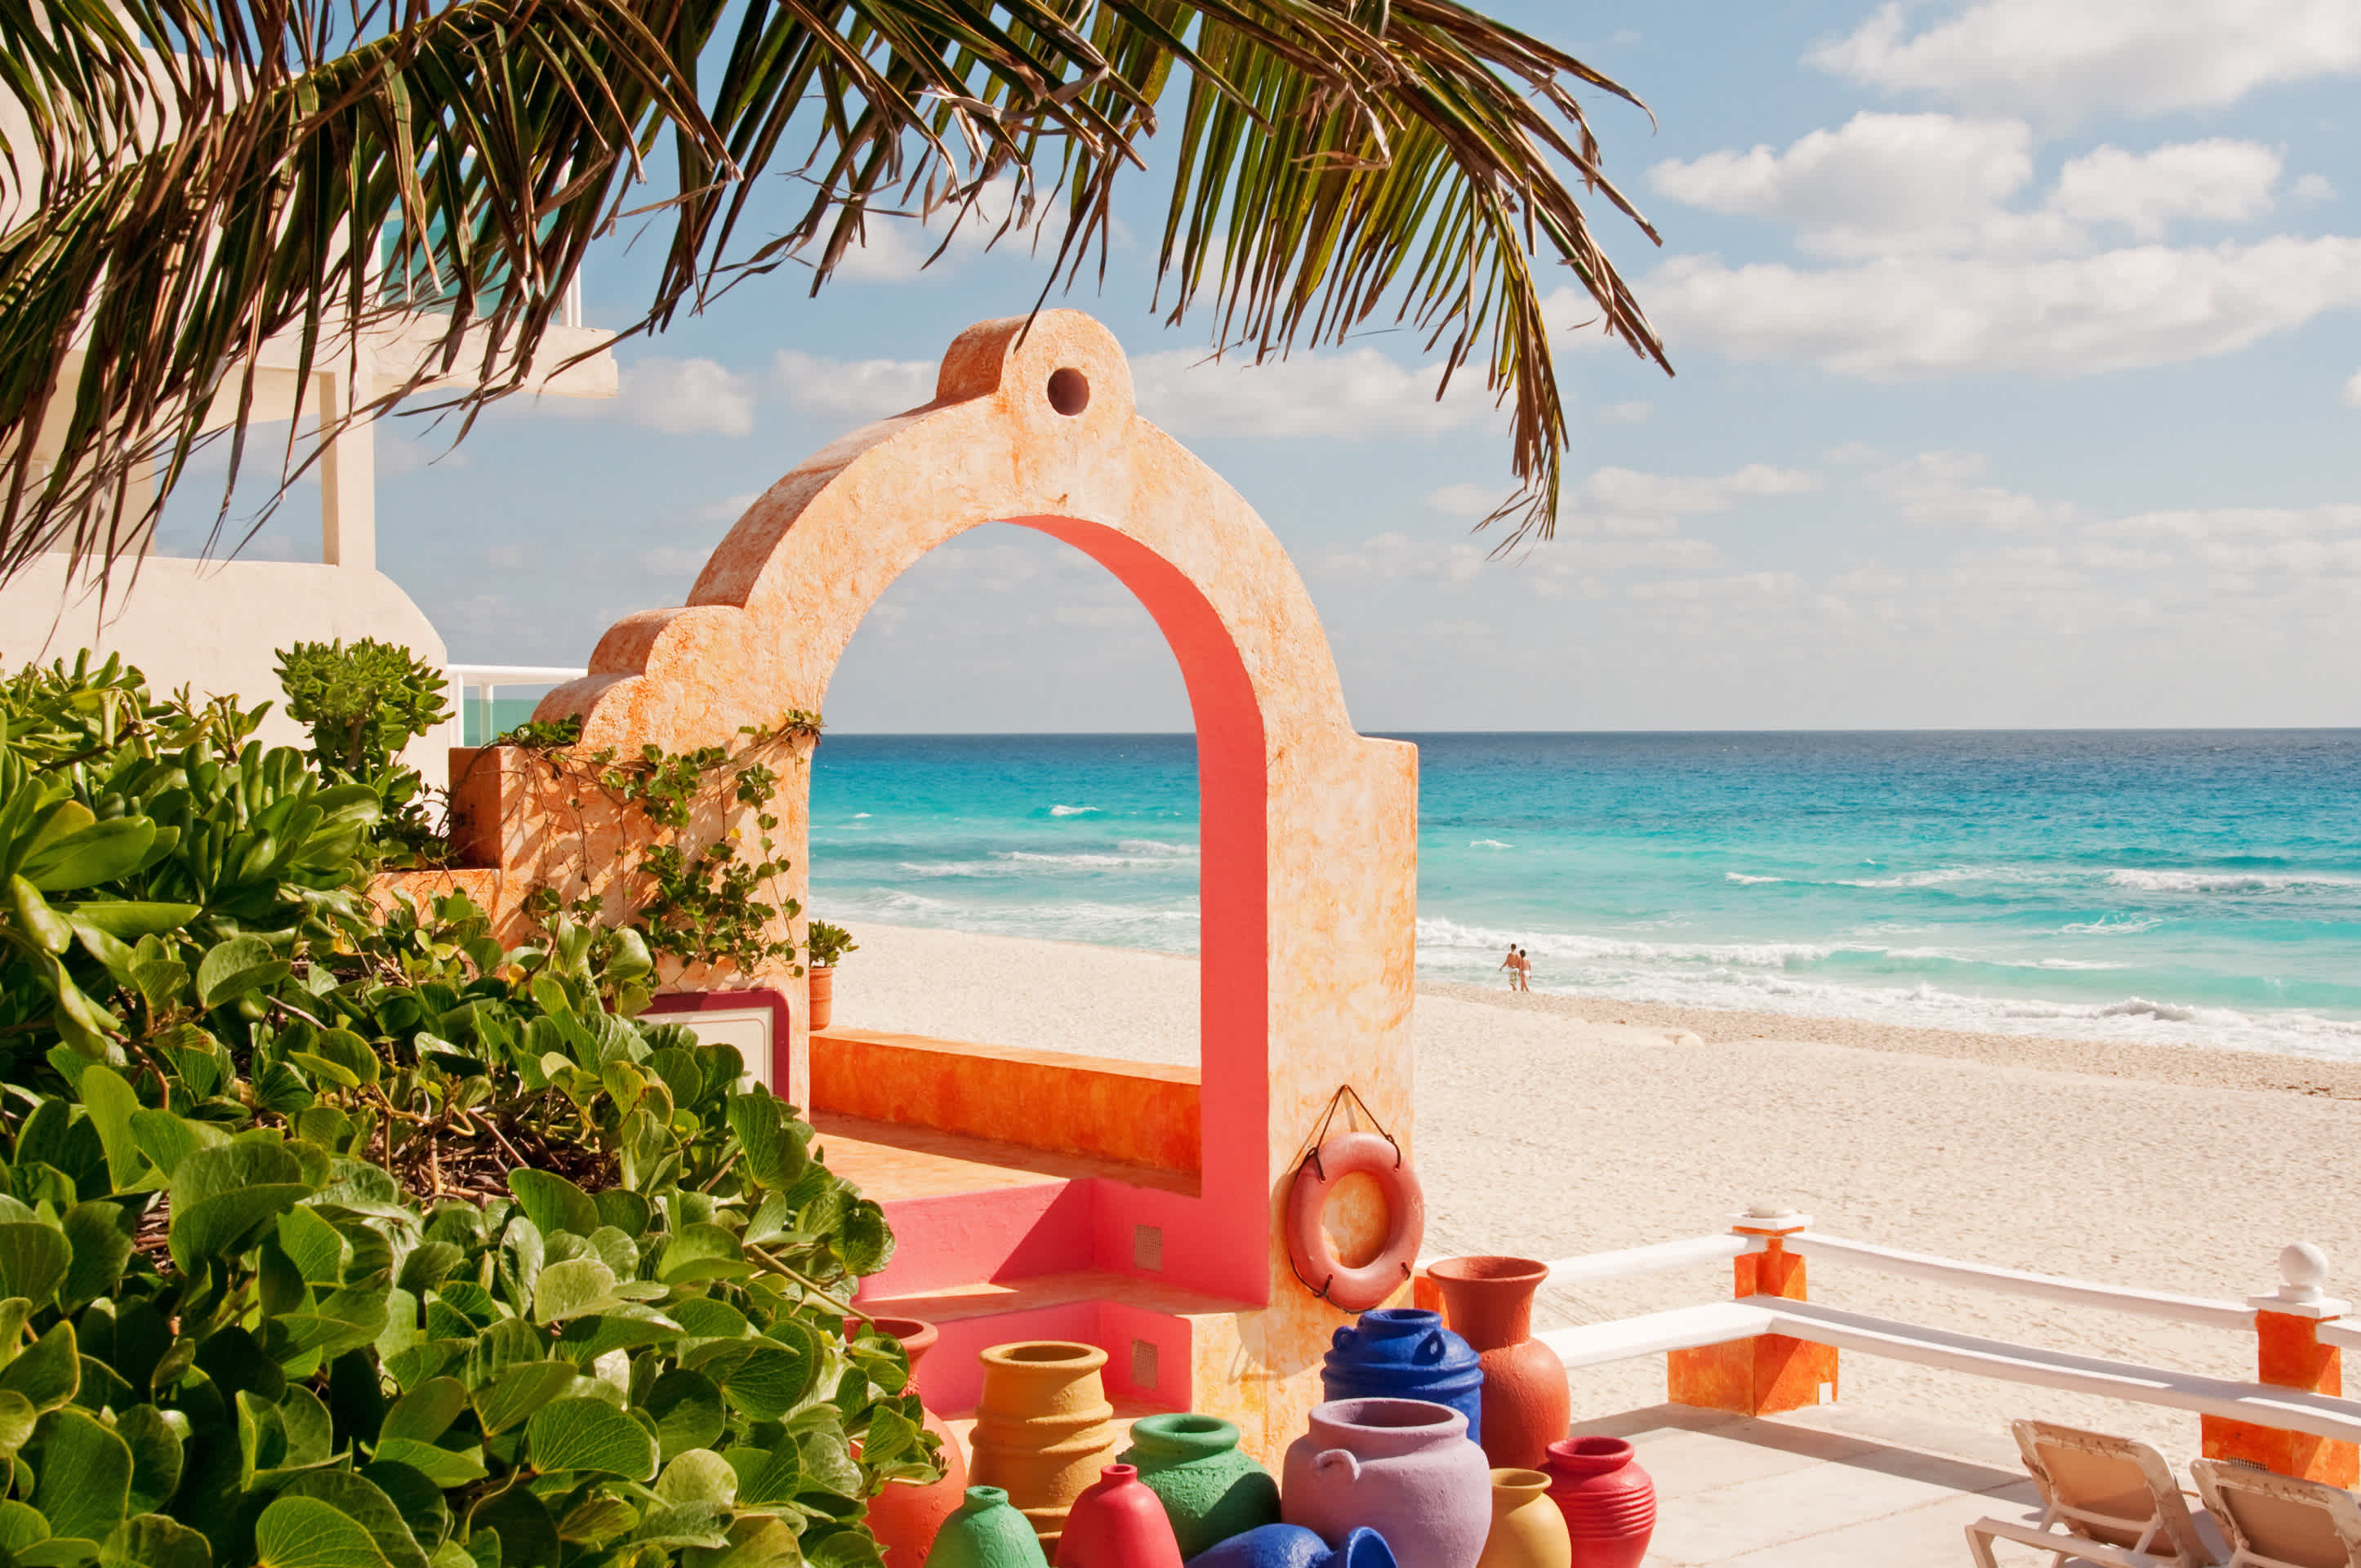 Mexikanische Keramik und Architektur am Strand von Cancun, Yucatan, Mexiko. 

